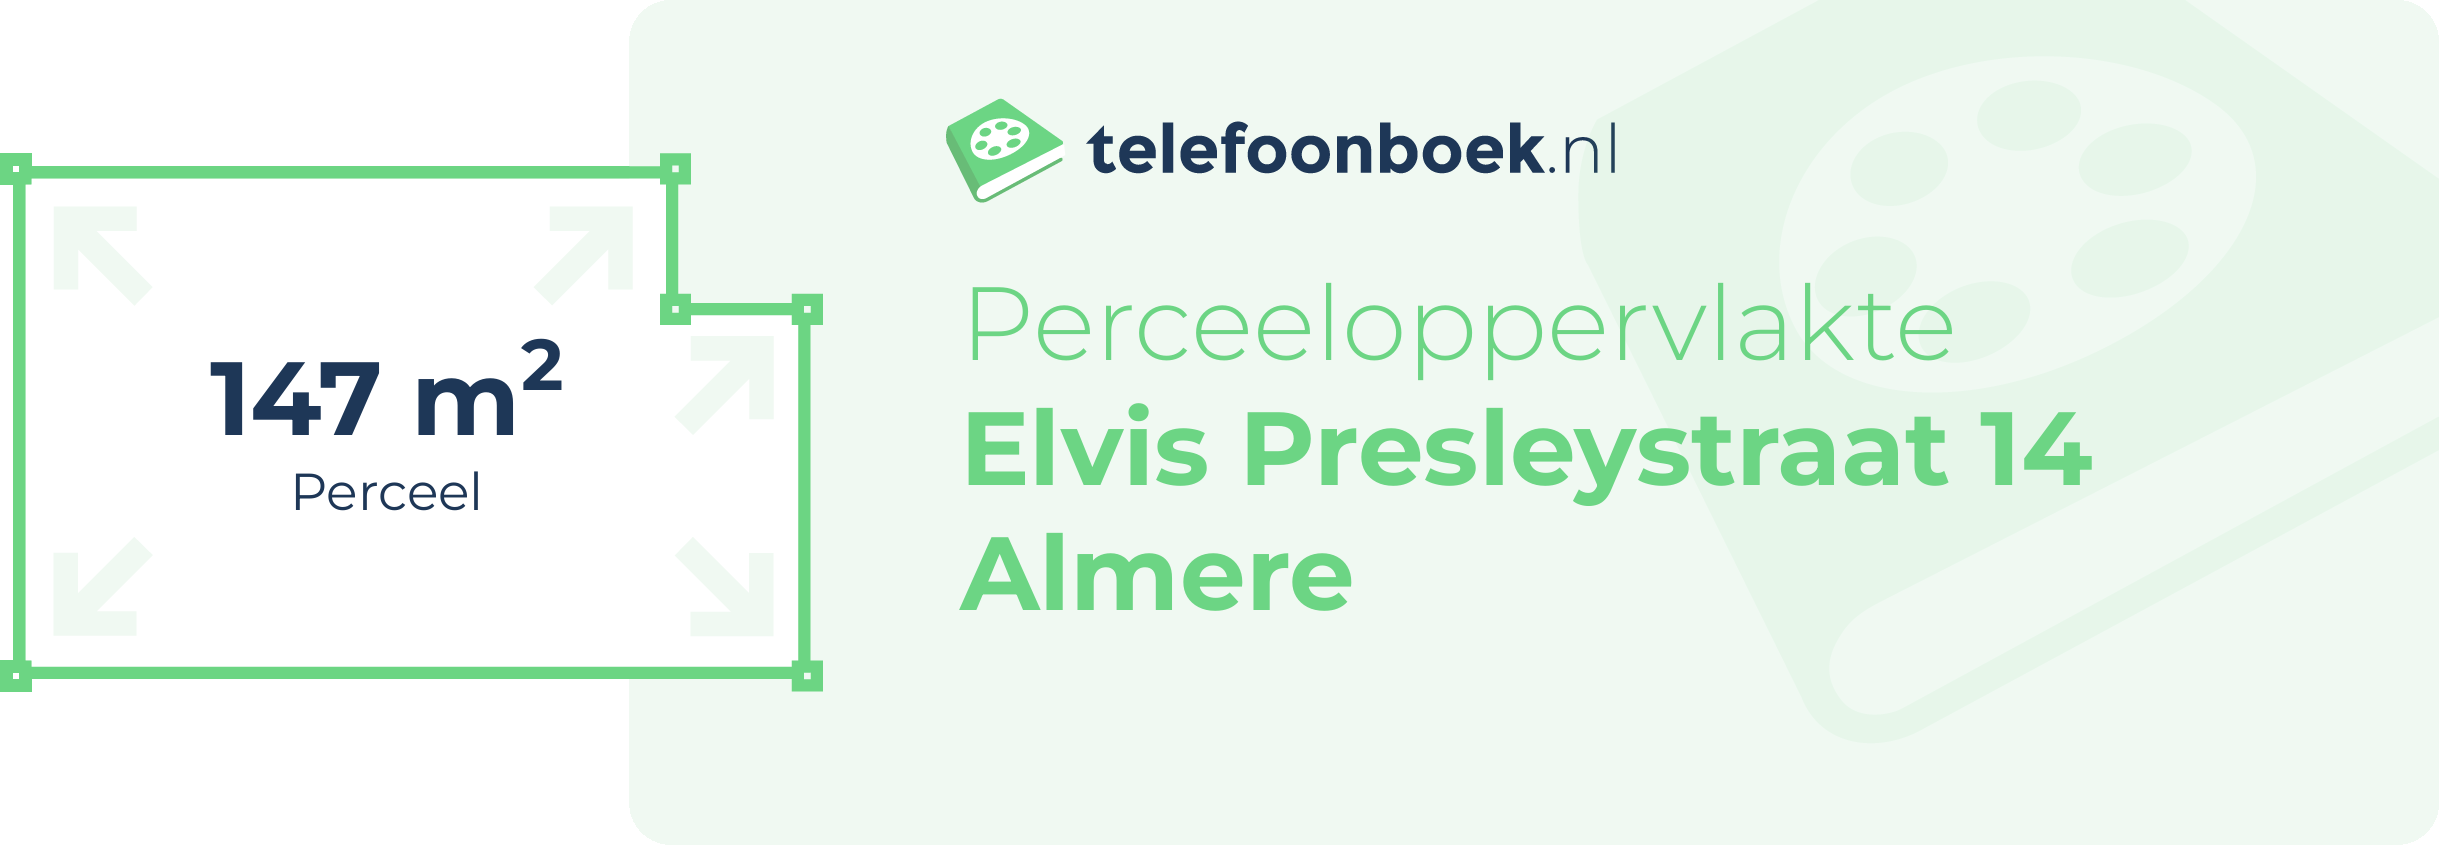 Perceeloppervlakte Elvis Presleystraat 14 Almere